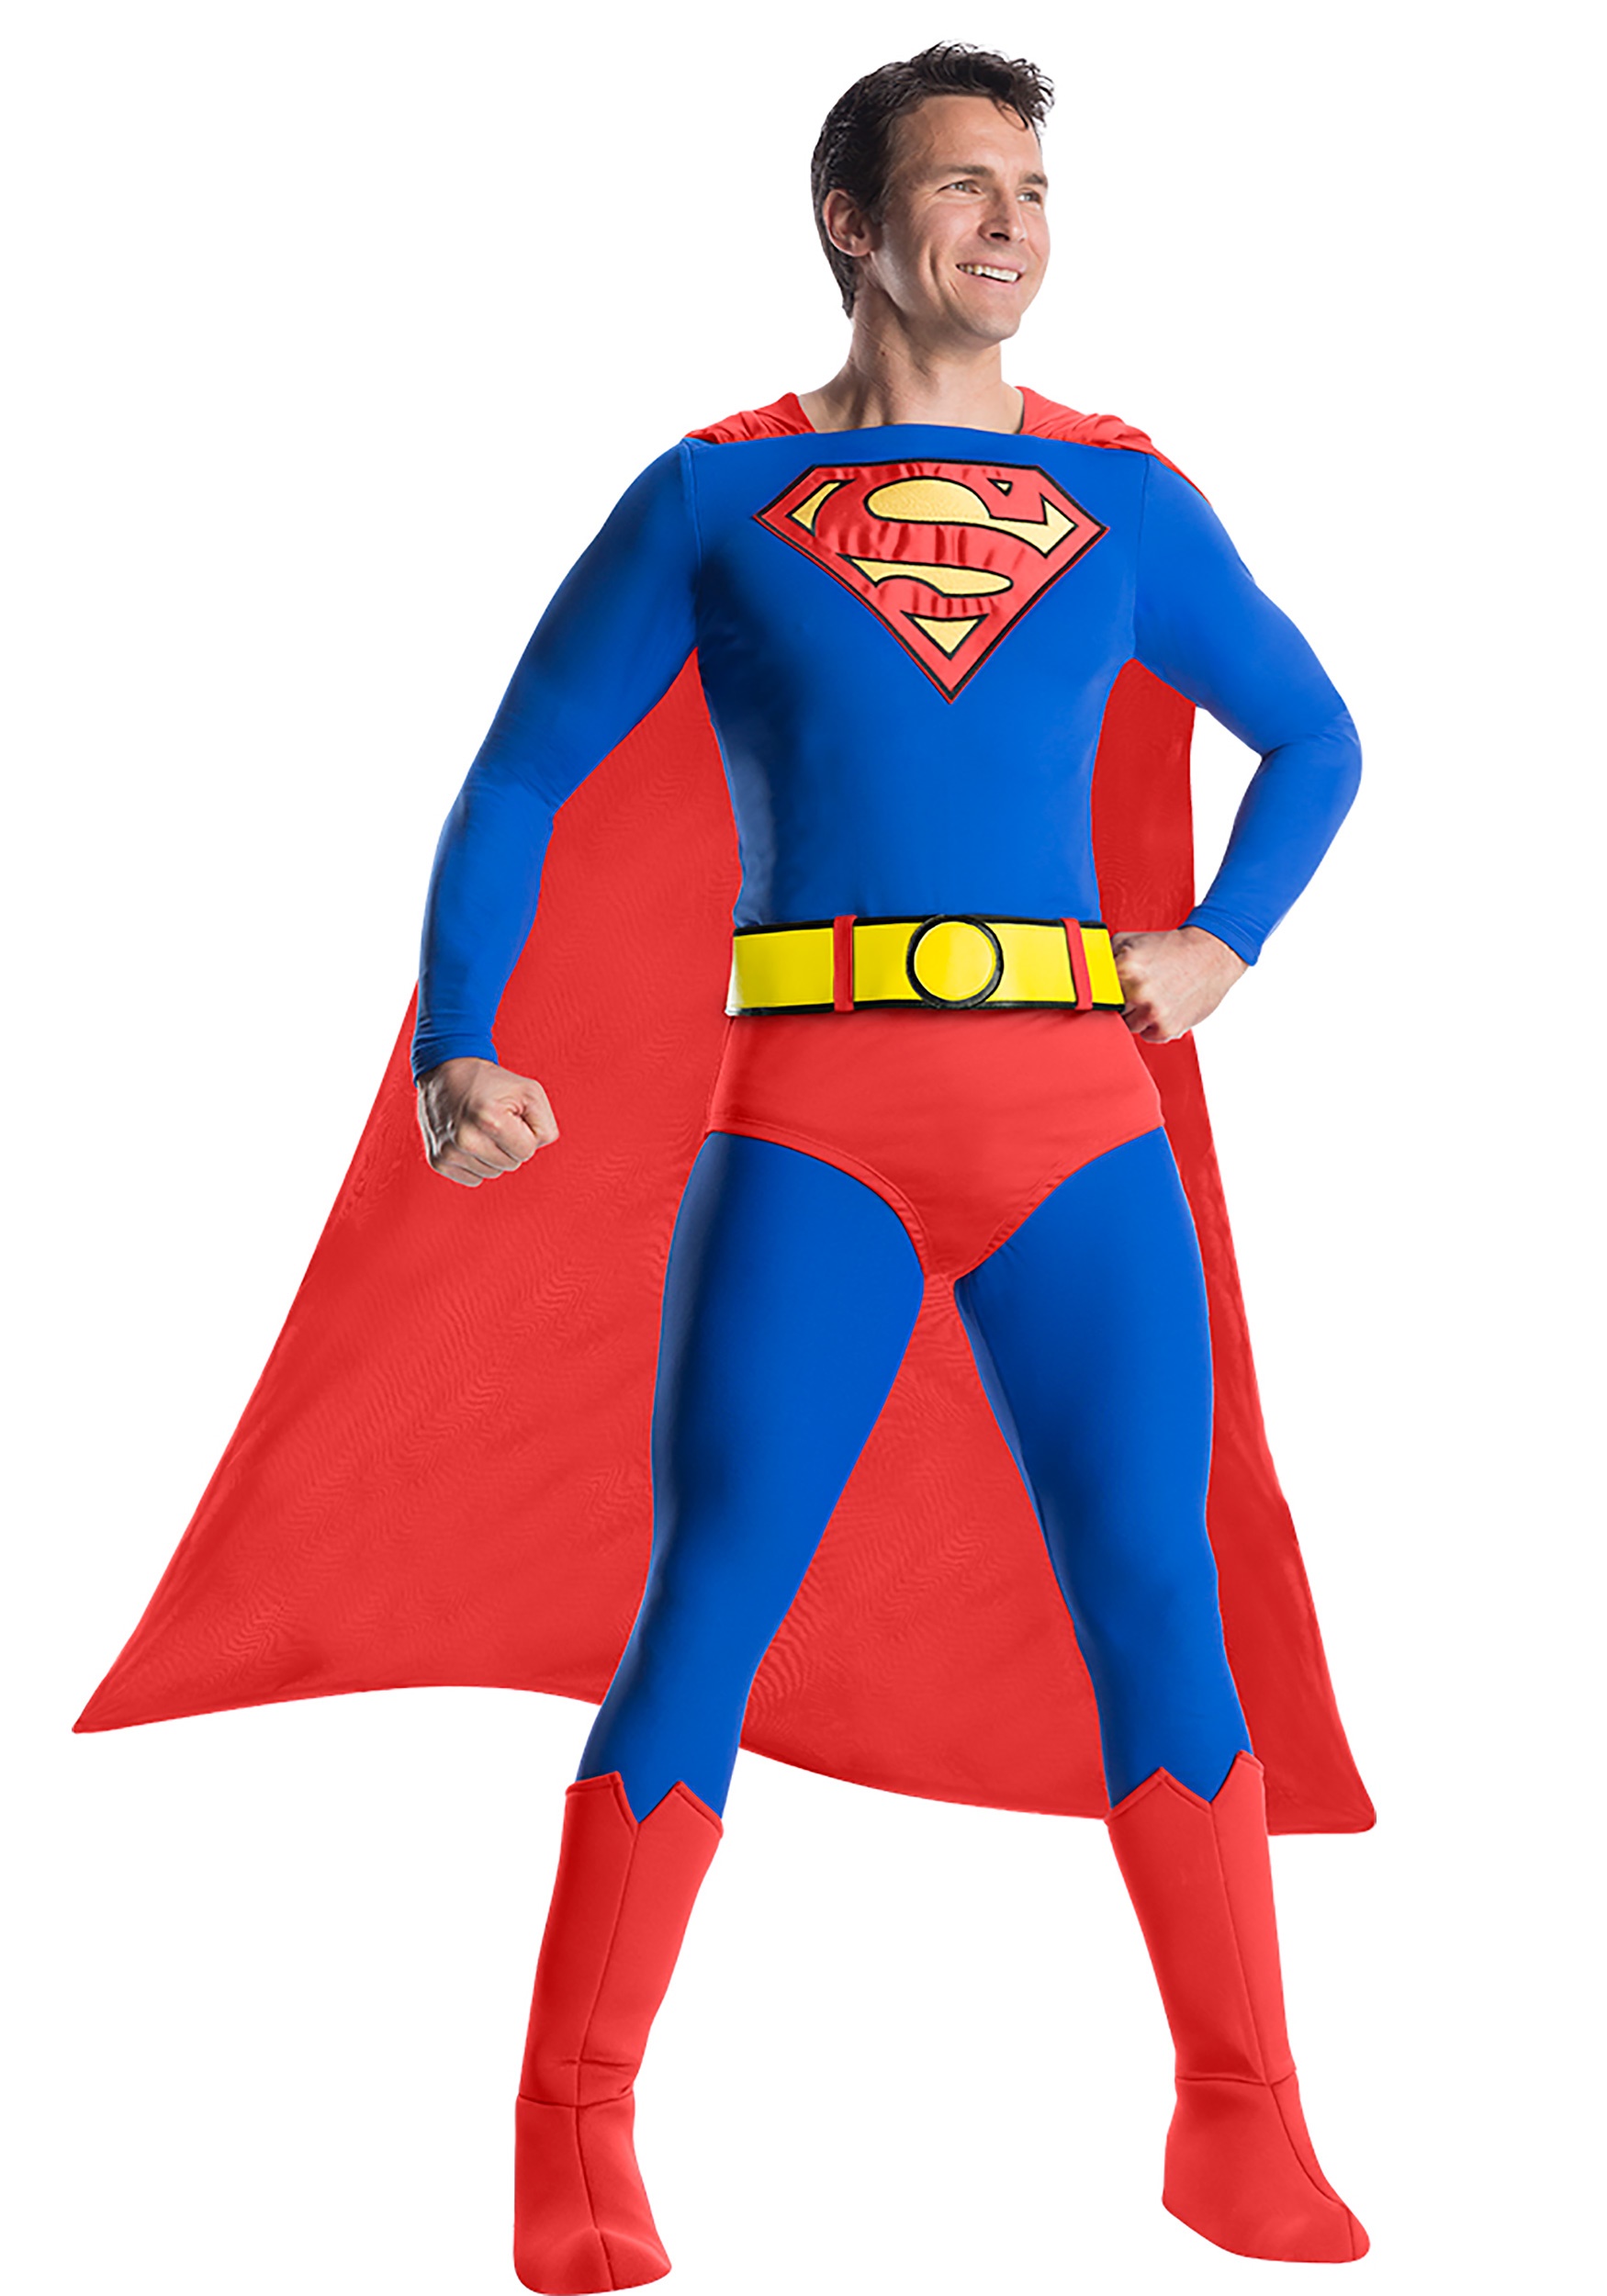 5.) Superman Premium Costume